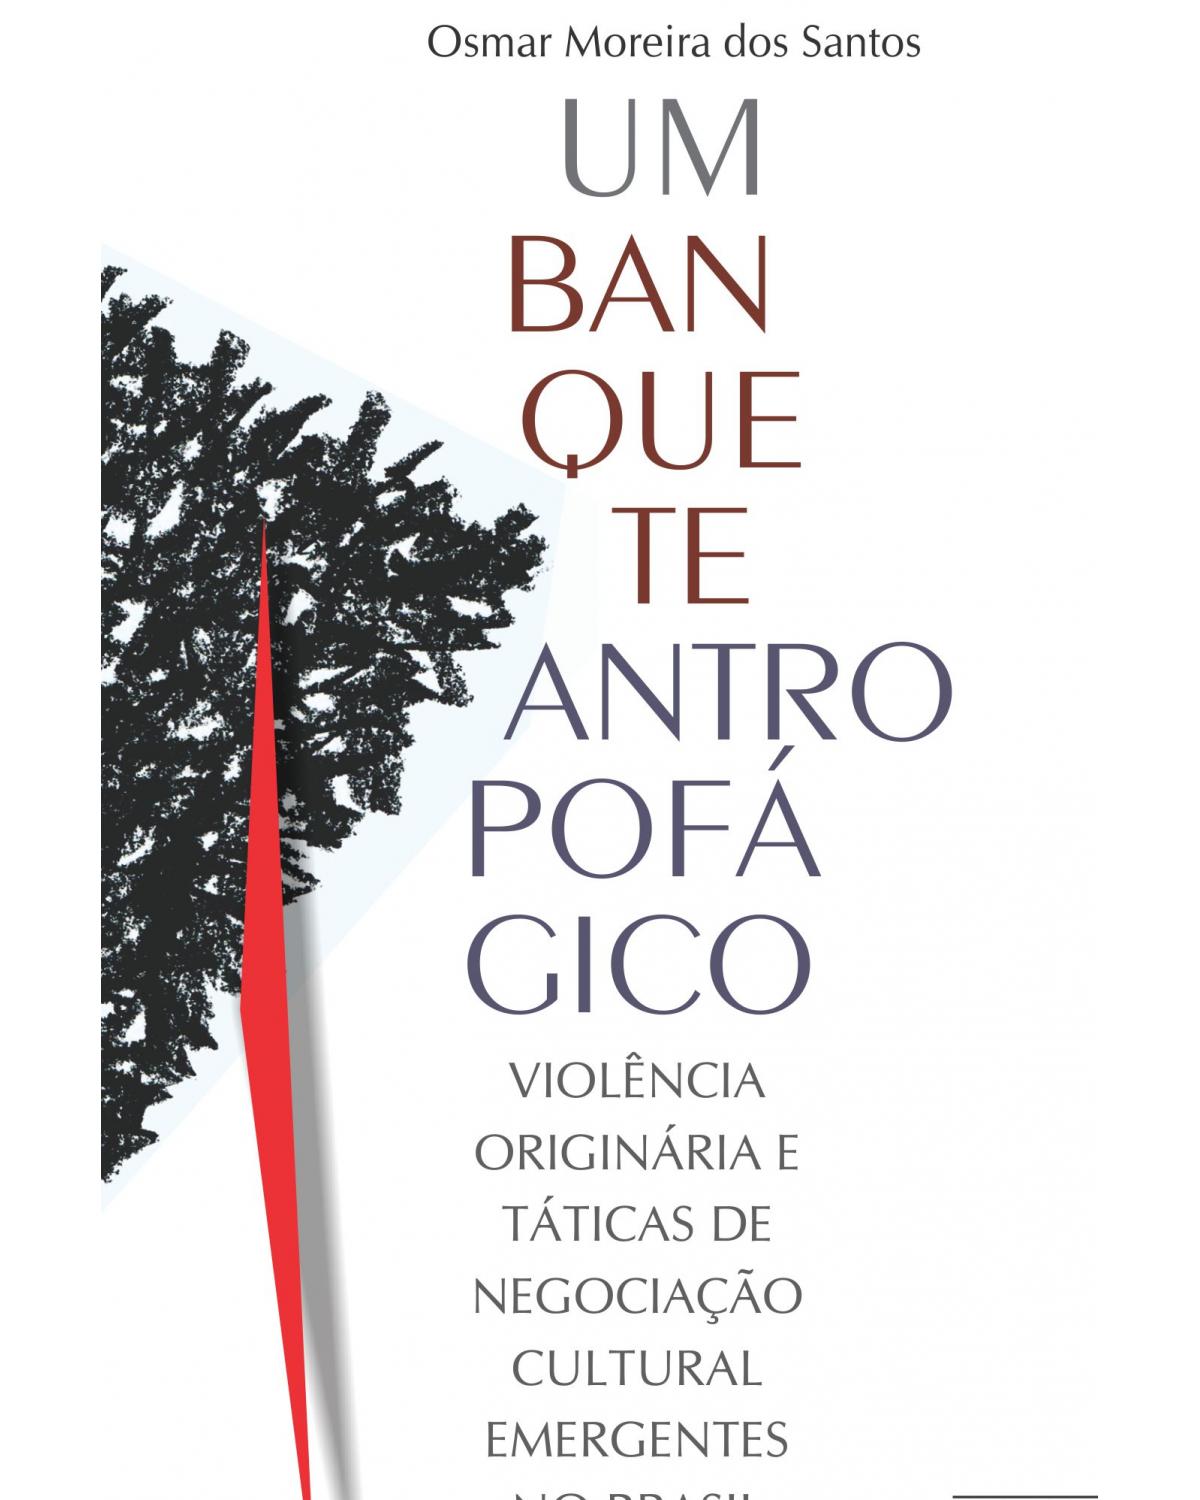 Um banquete antropofágico - violência originária e táticas de negociação cultural emergentes no Brasil - 1ª Edição | 2021